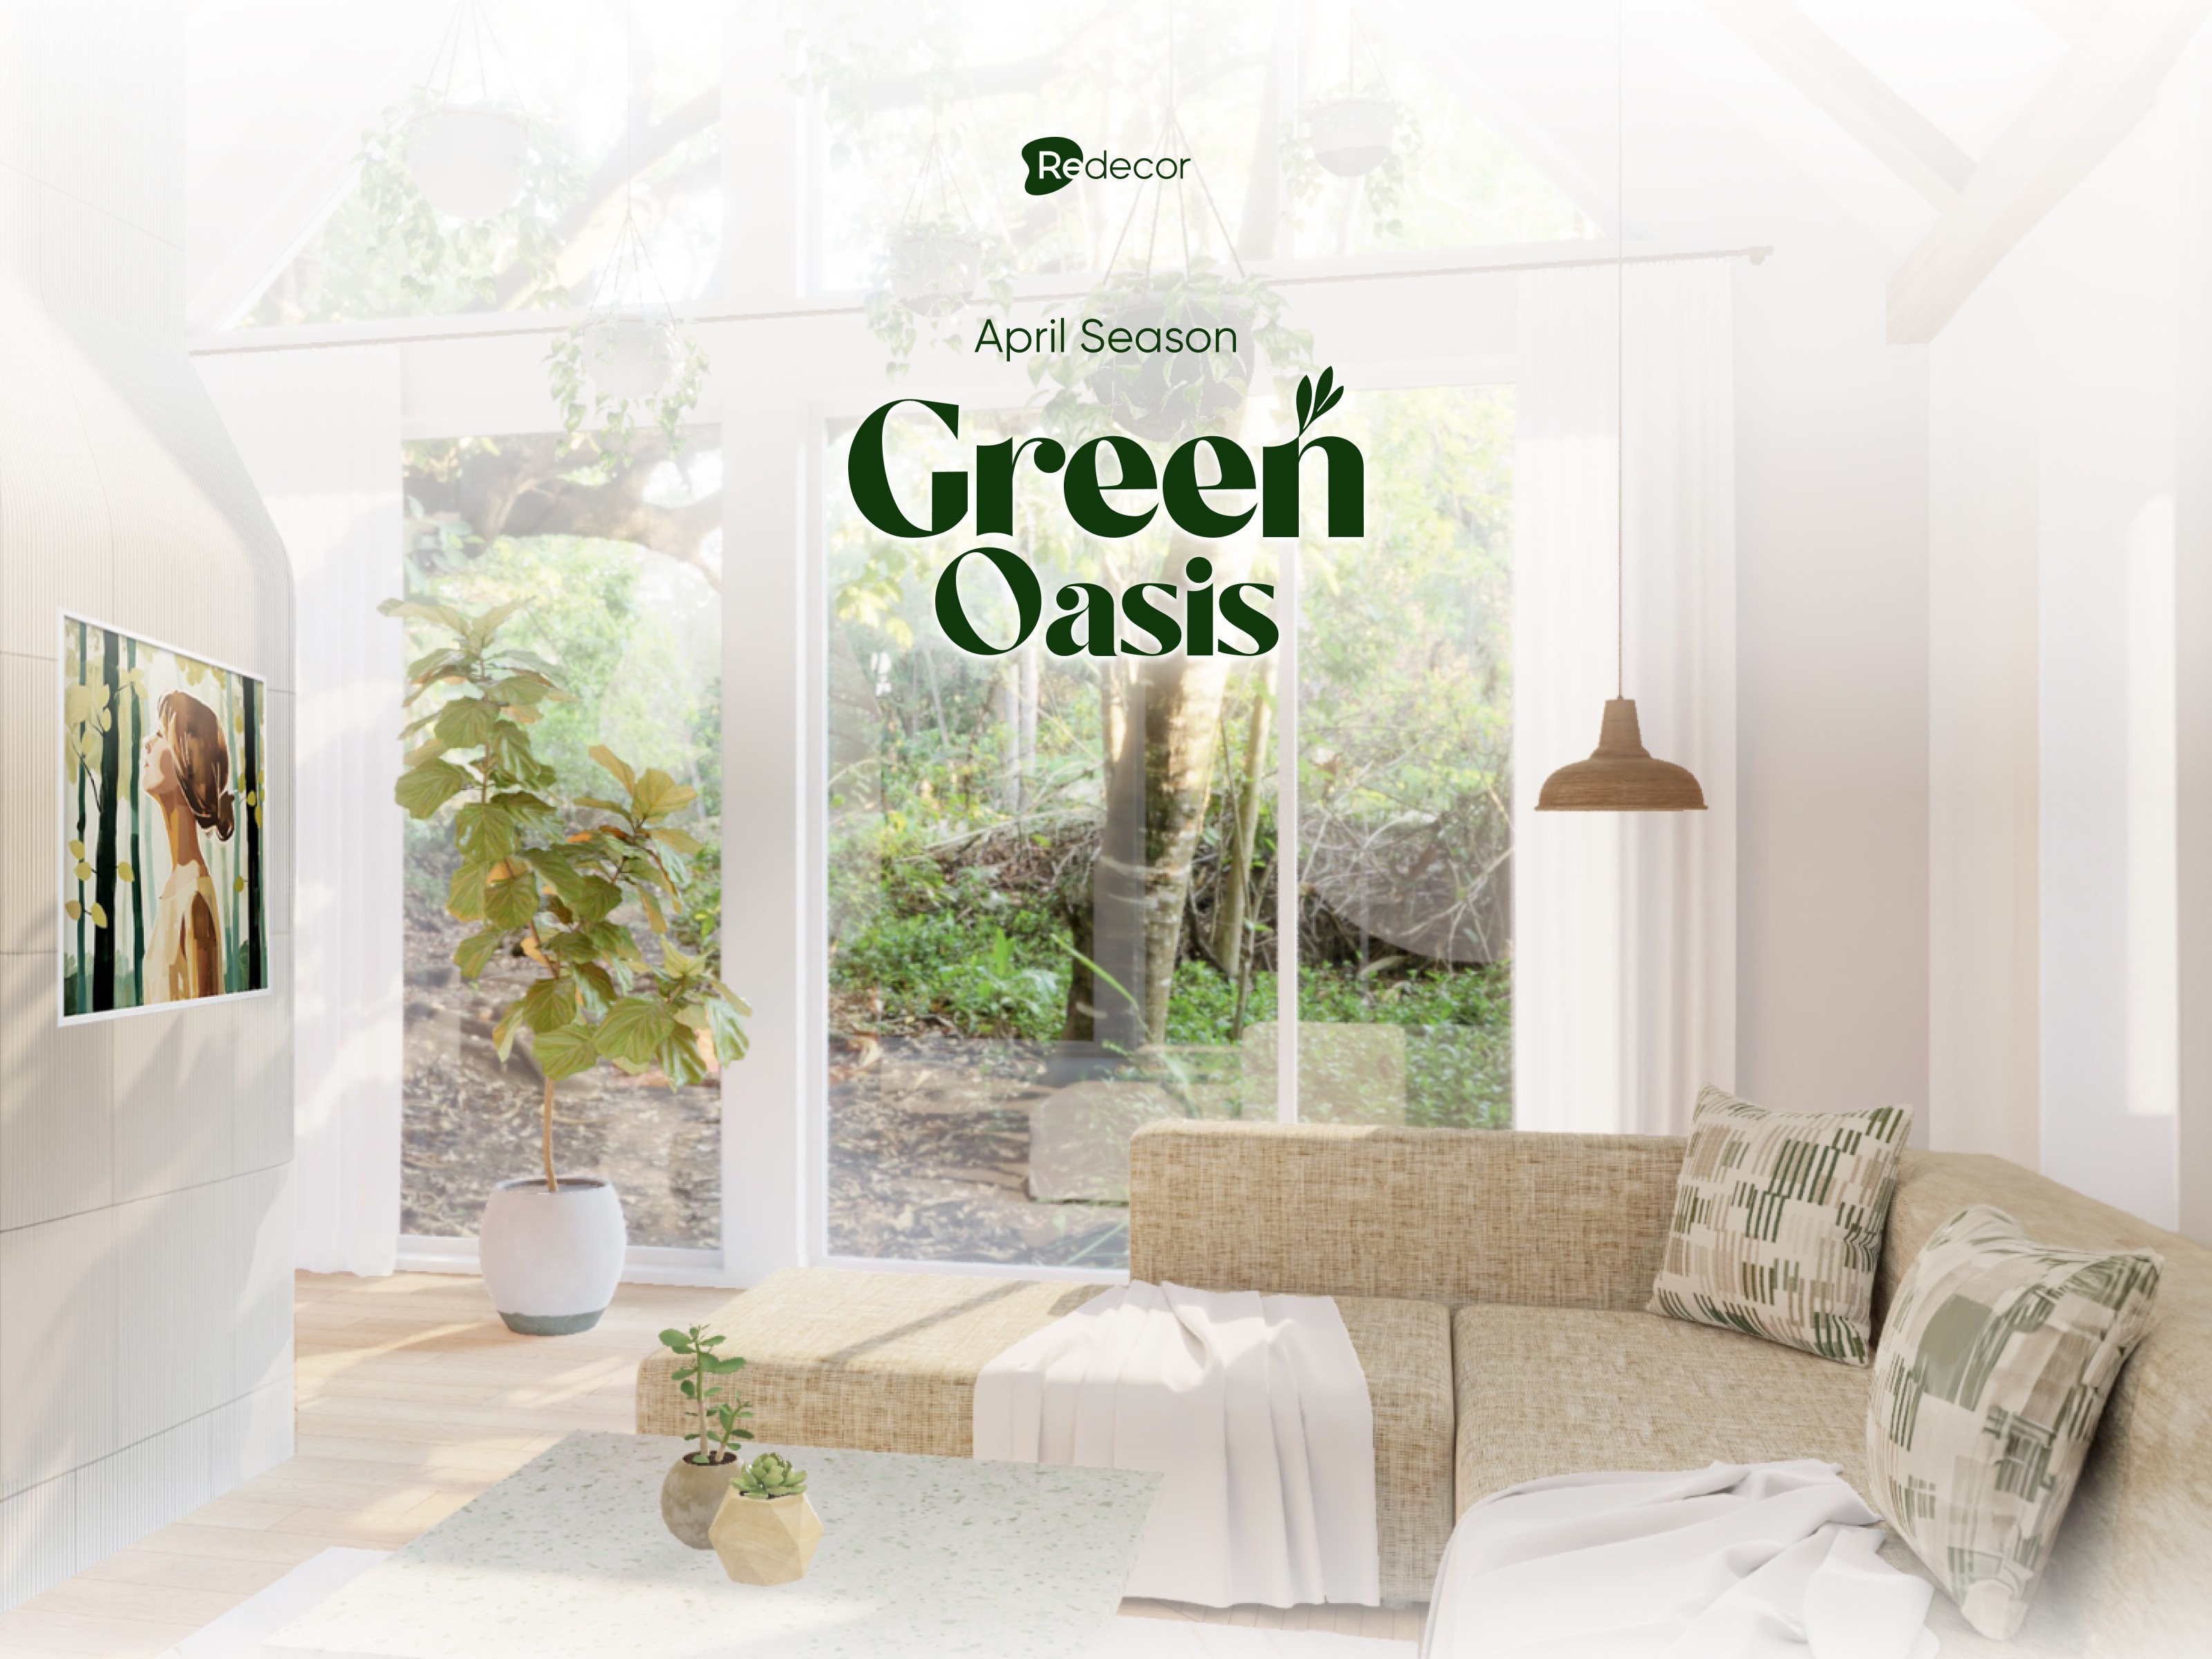 splashscreen for Green Oasis season